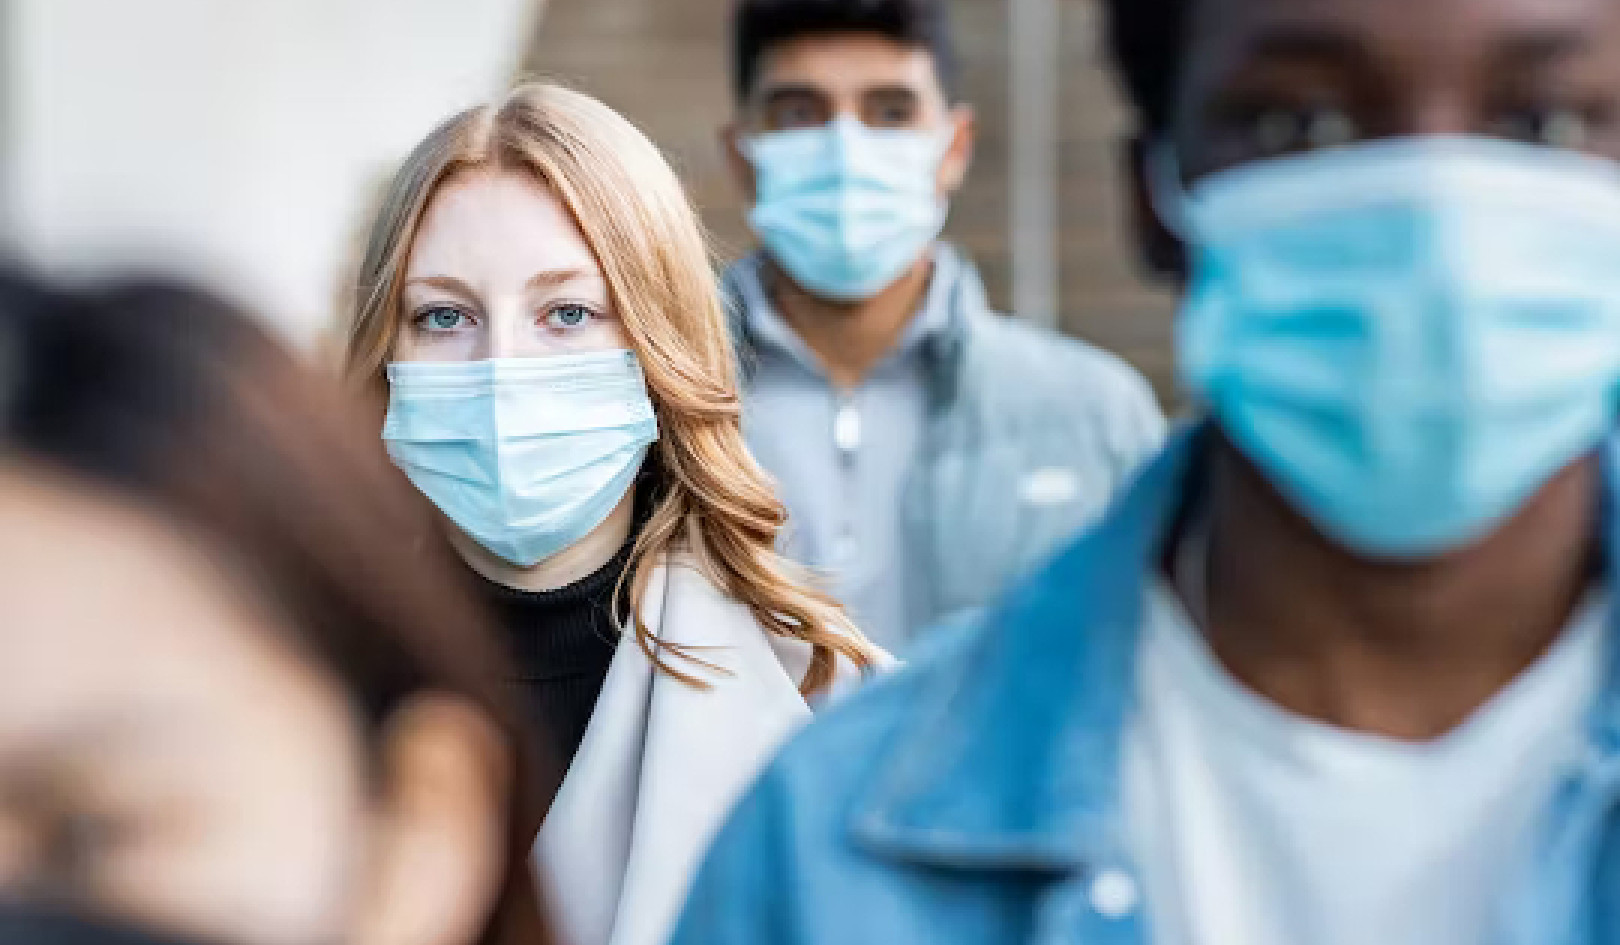 Masken sind immer noch ein bewährtes Mittel, um sich vor Viren zu schützen